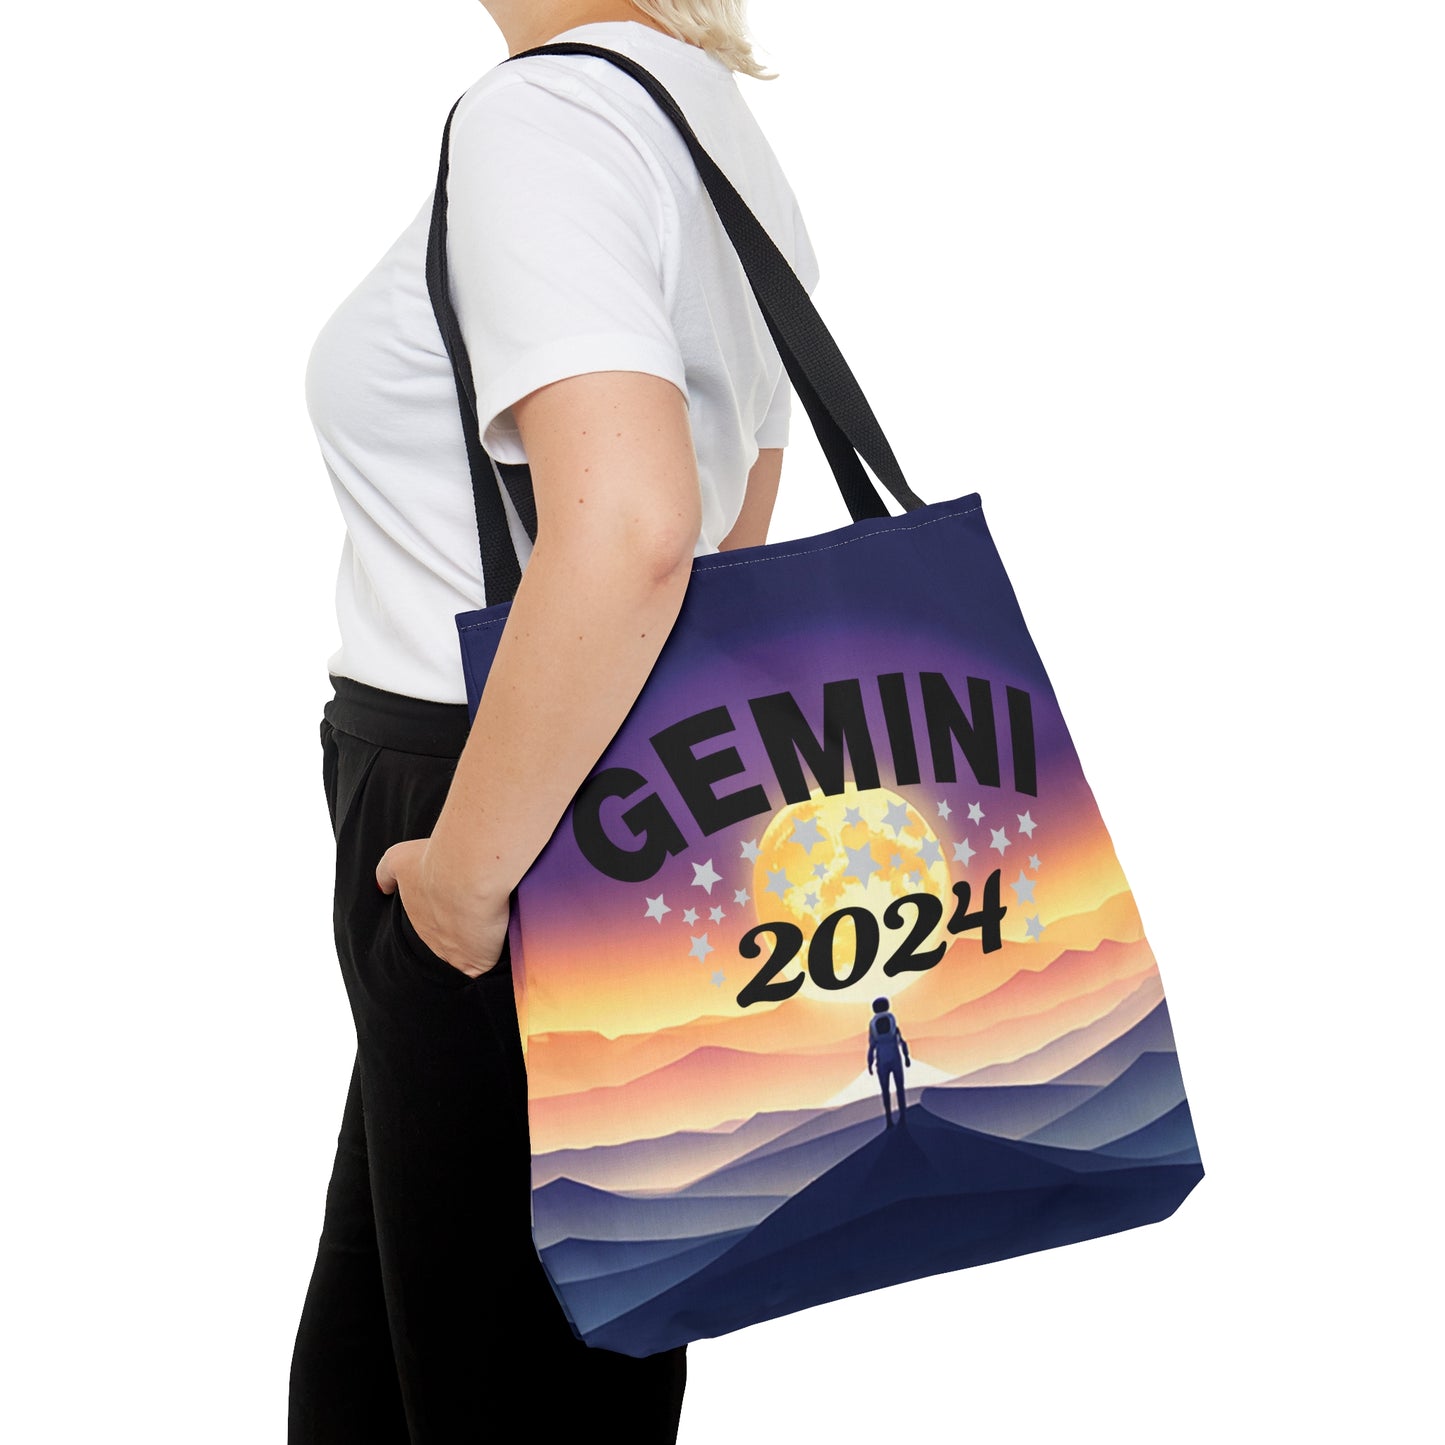 Gemini 2024 Tote Bag